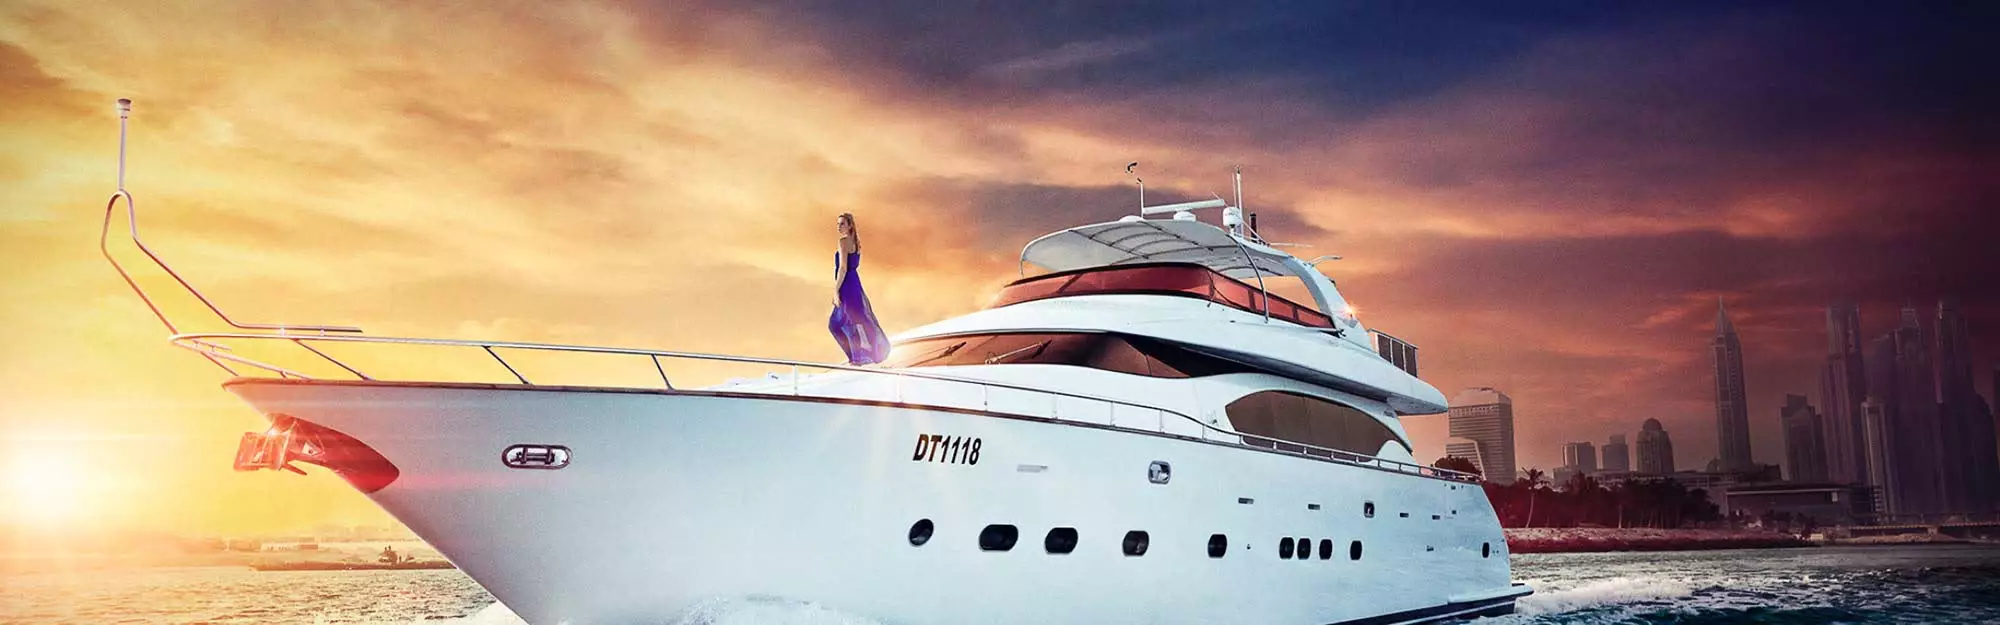 Dubai Yacht Rental Charter